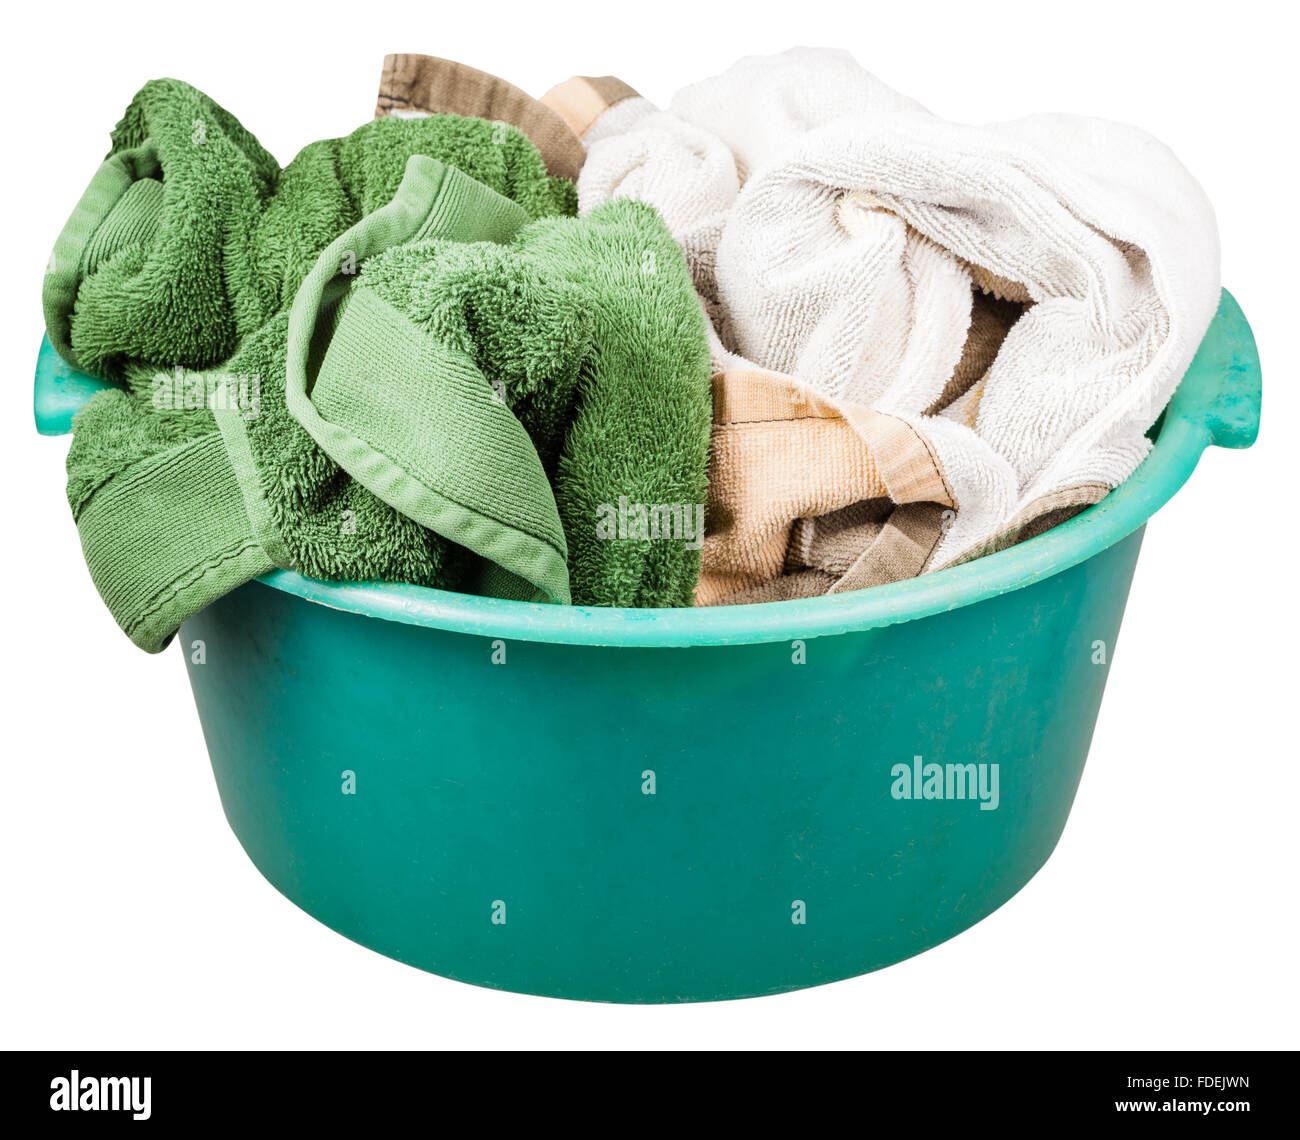 Rotondo plastica verde lavabo con asciugamani isolati su sfondo bianco Foto Stock